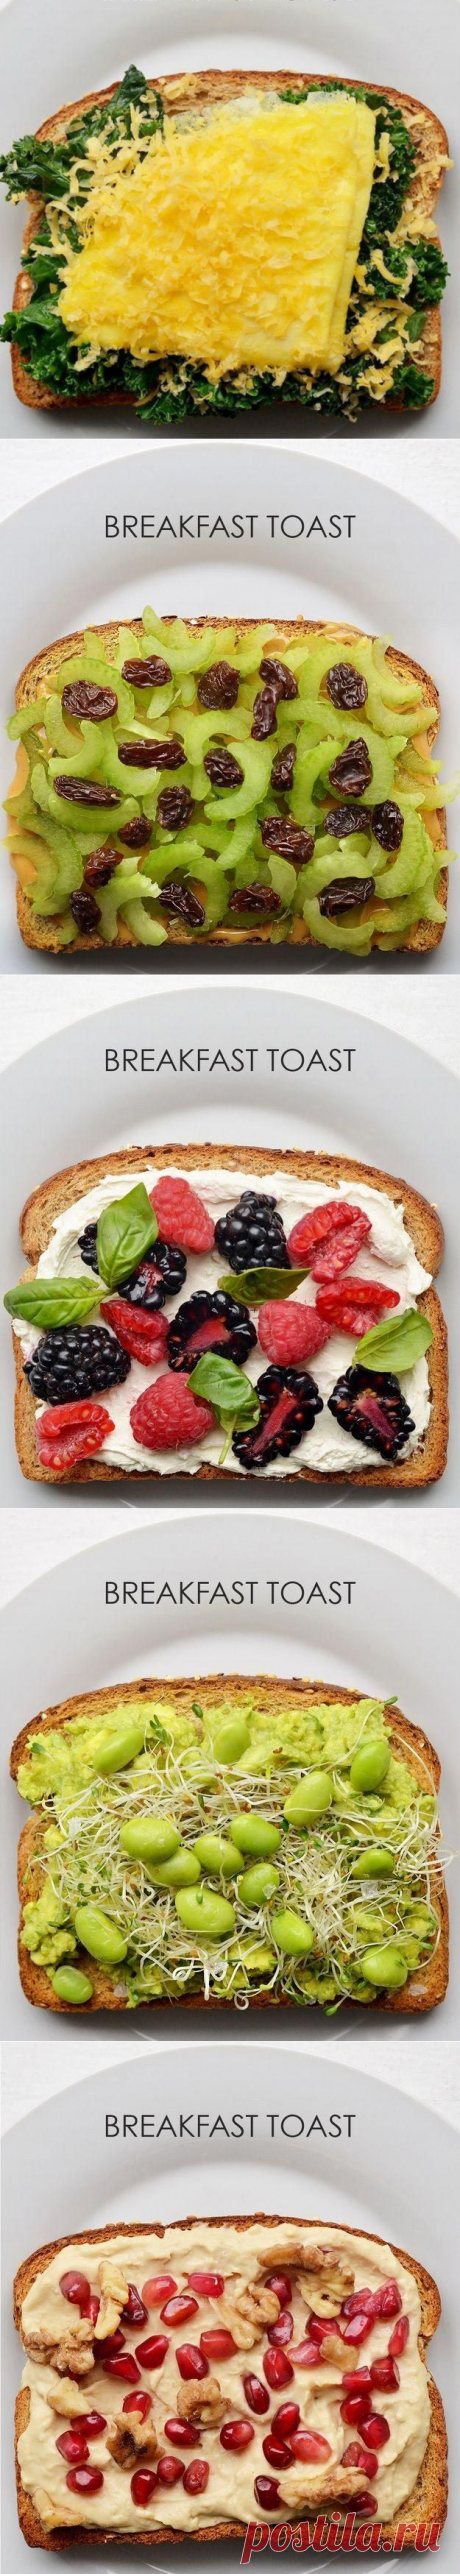 Готовим вкуснейшие тосты на завтрак — Мания.инфо